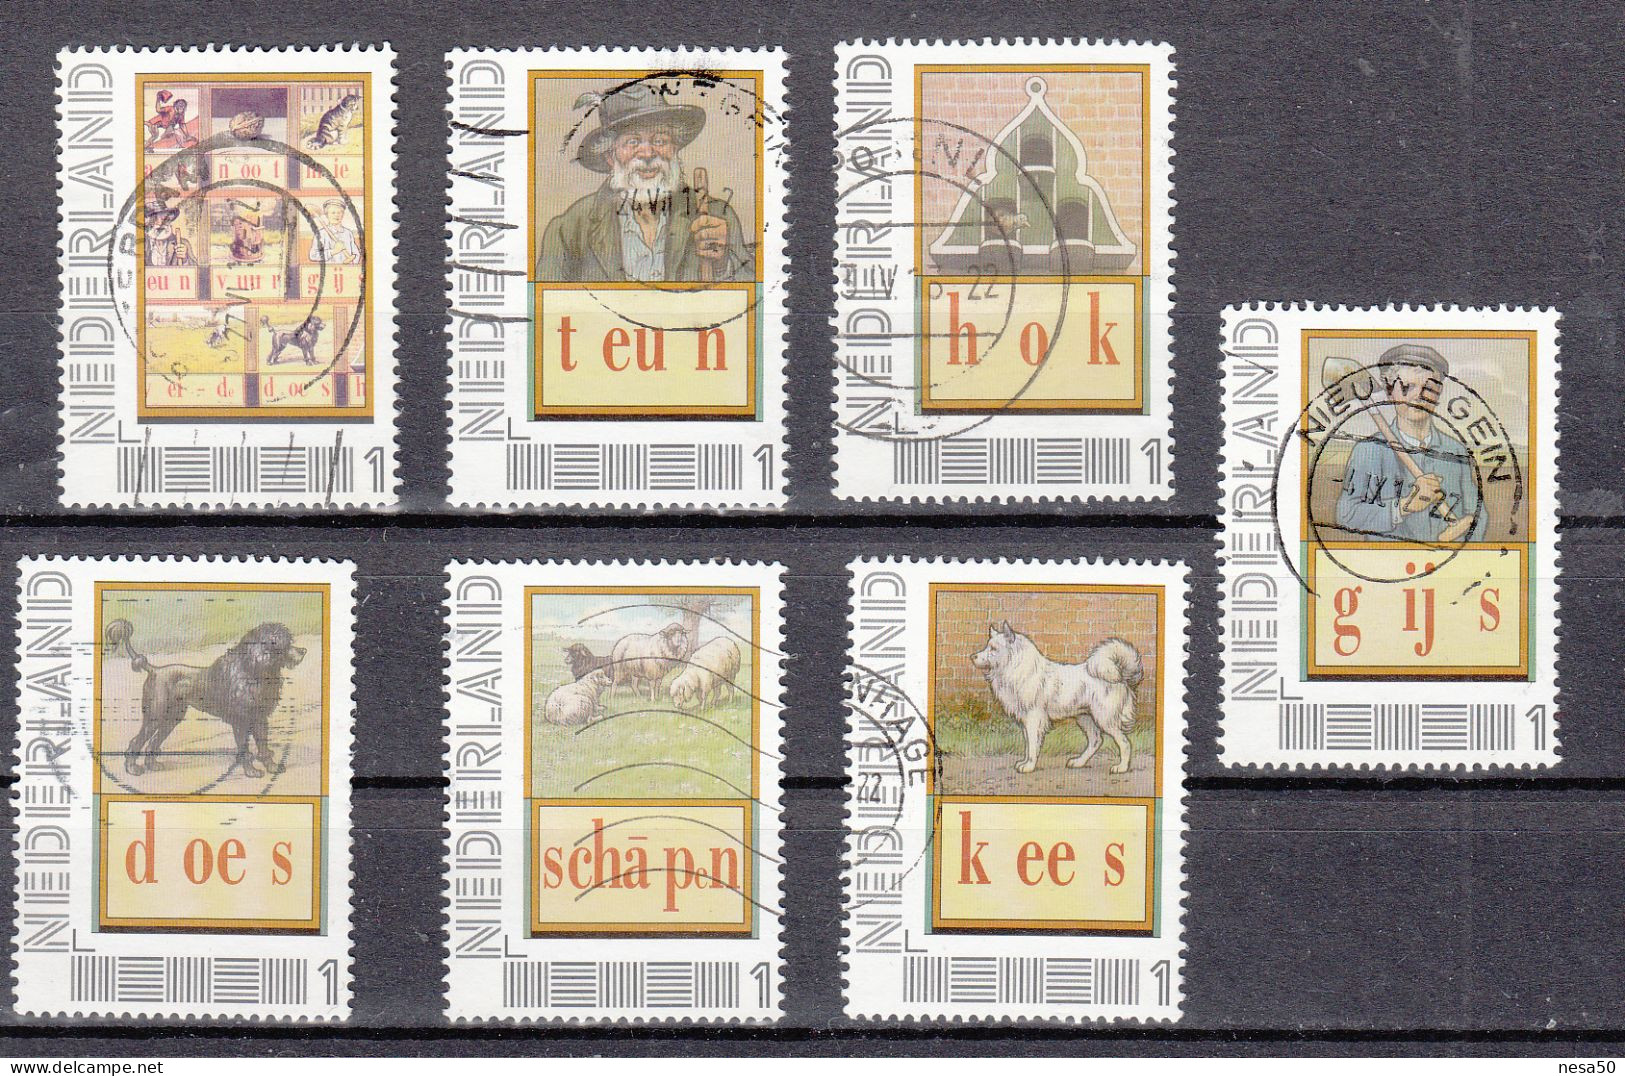 Nederland Persoonlijke Zegels: 7 St; Thema: Leesplankje, Teun, Hok, Gijs, Kees, Schapen,does, - Used Stamps